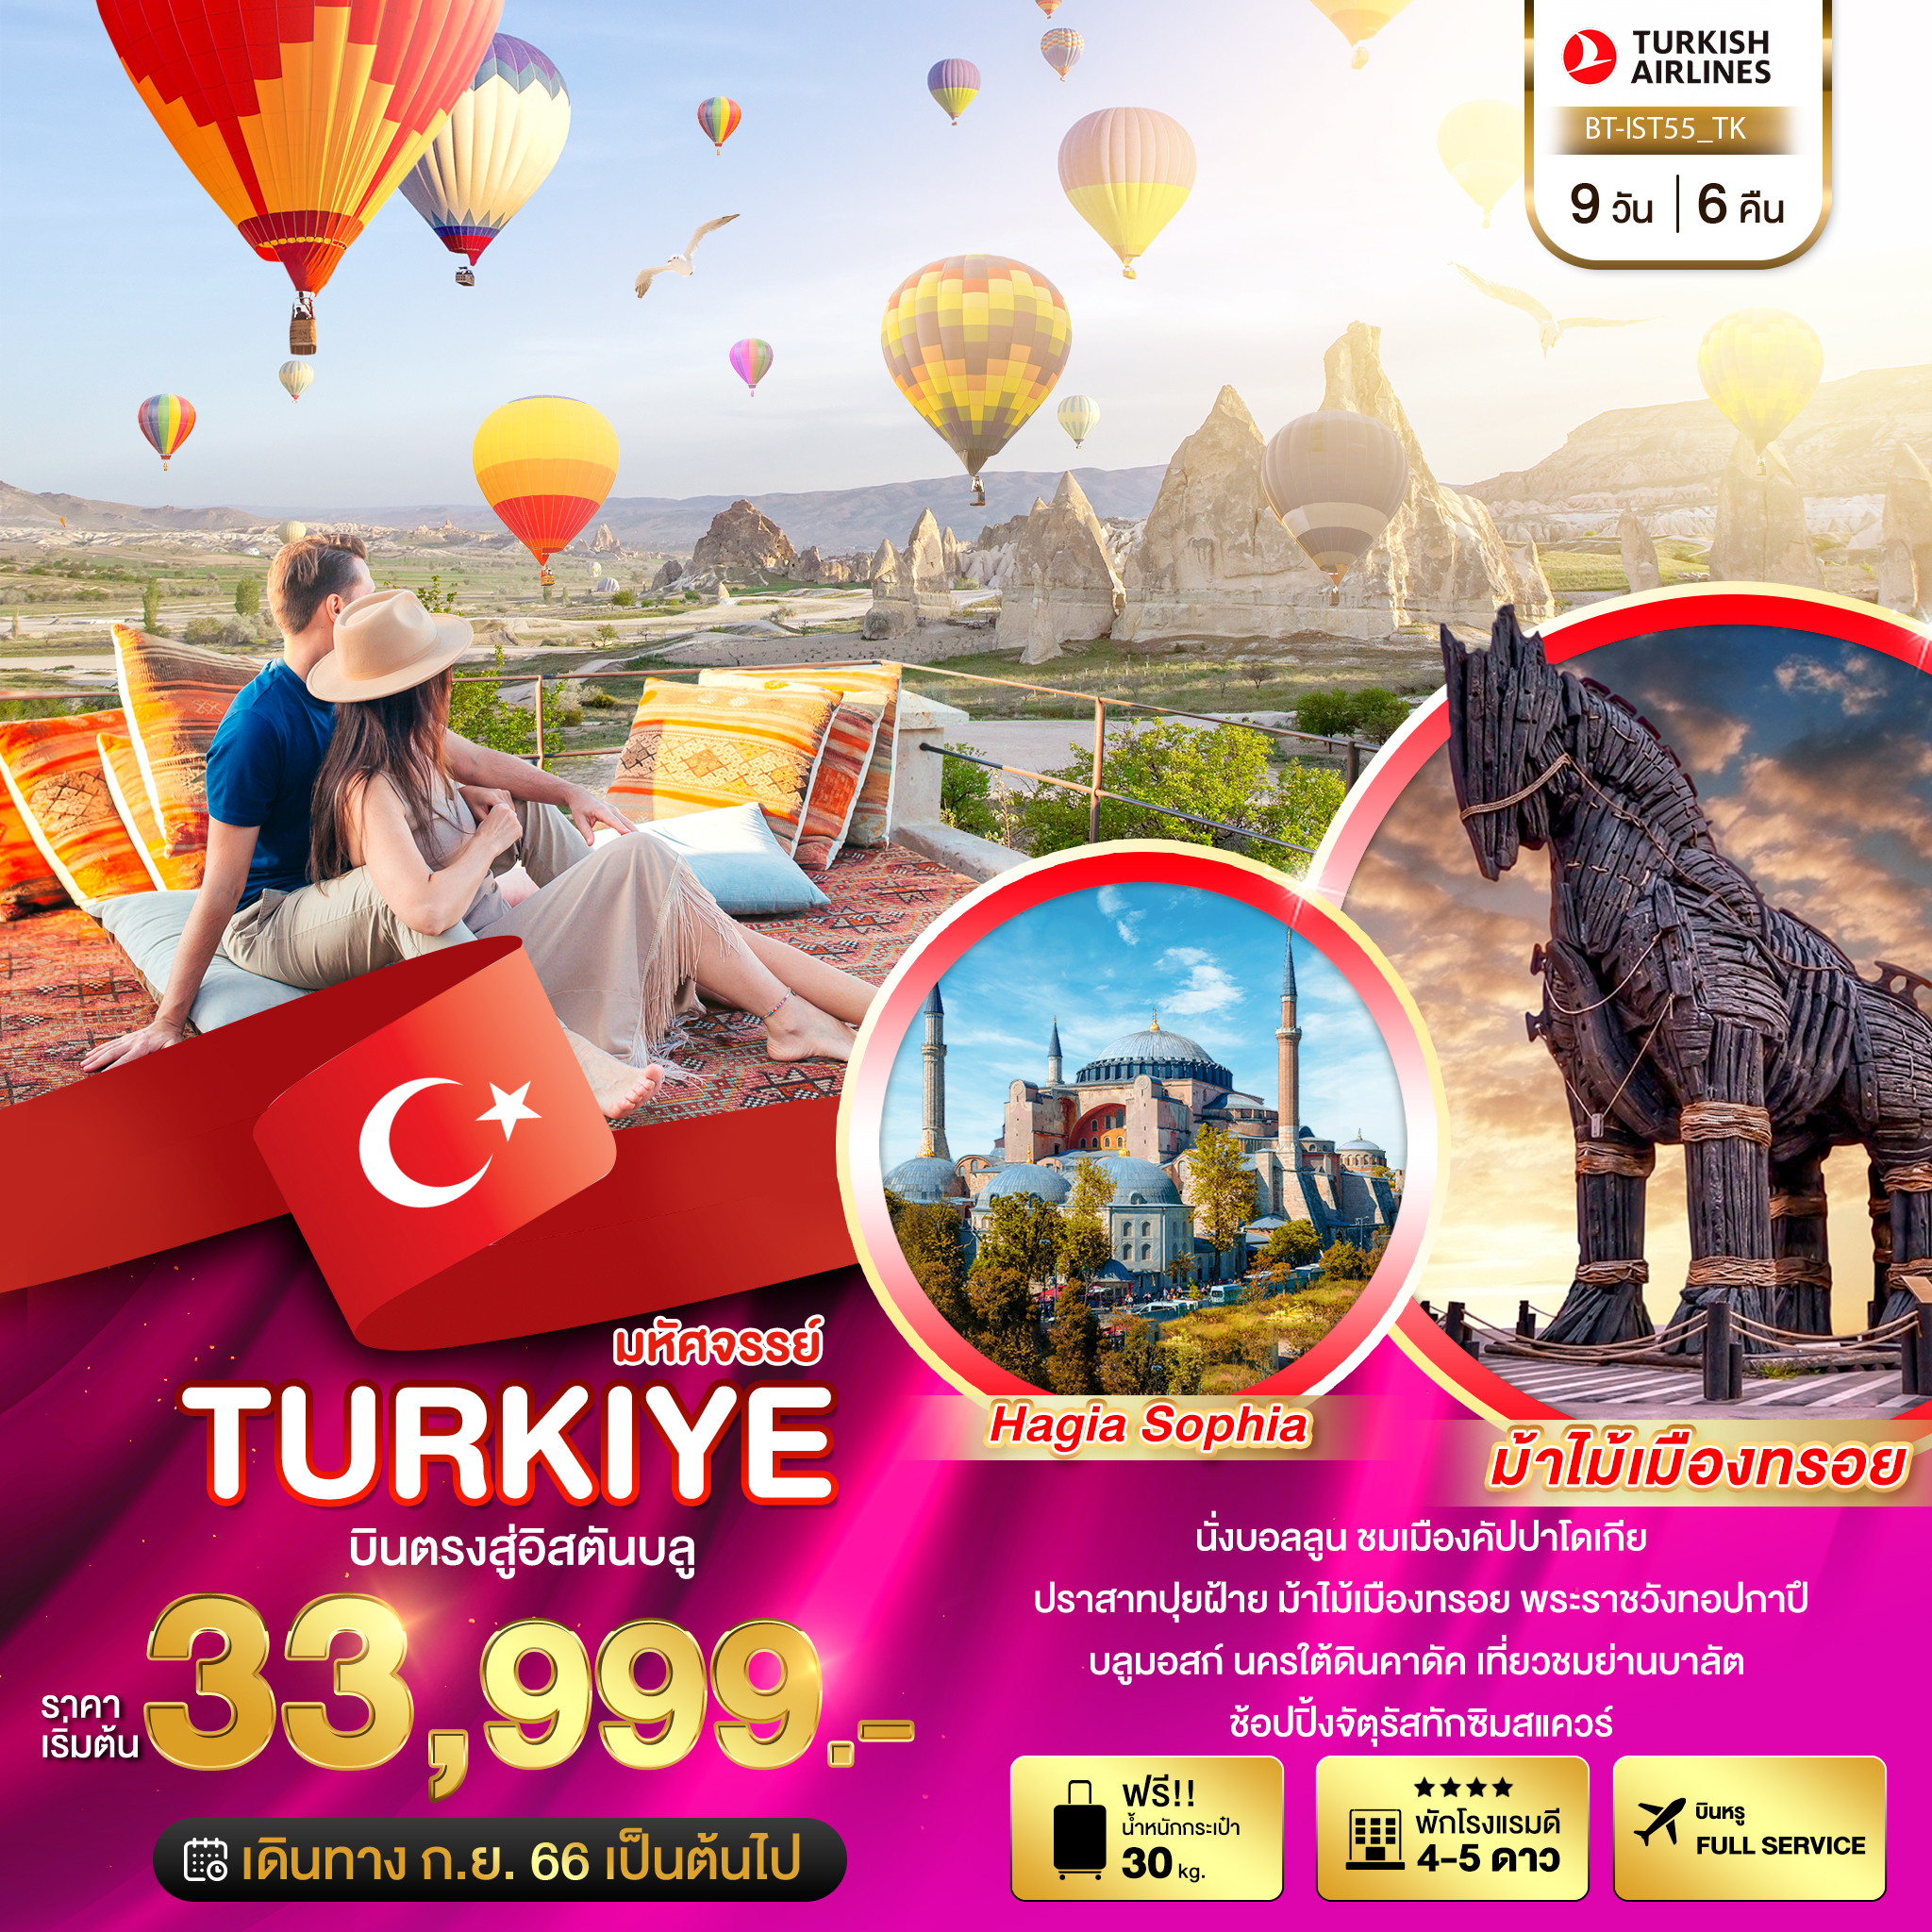 ทัวร์ตุรกี TURKIYE บินตรงสู่อิสตันบูล 9 วัน 6 คืน